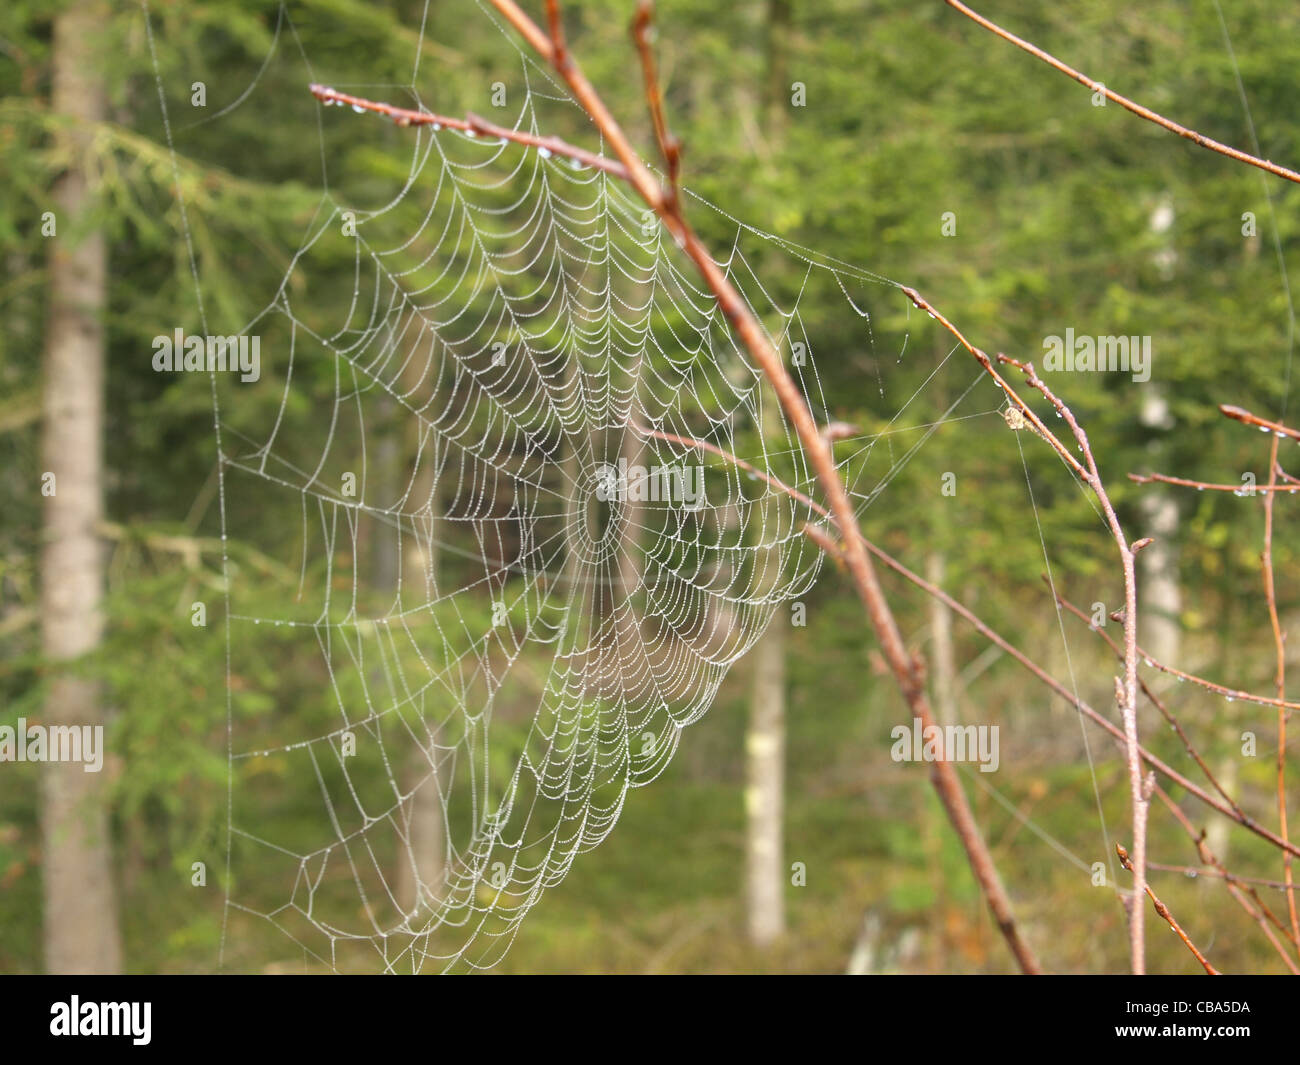 spiderweb with drops / Spinnennetz mit Tropfen Stock Photo